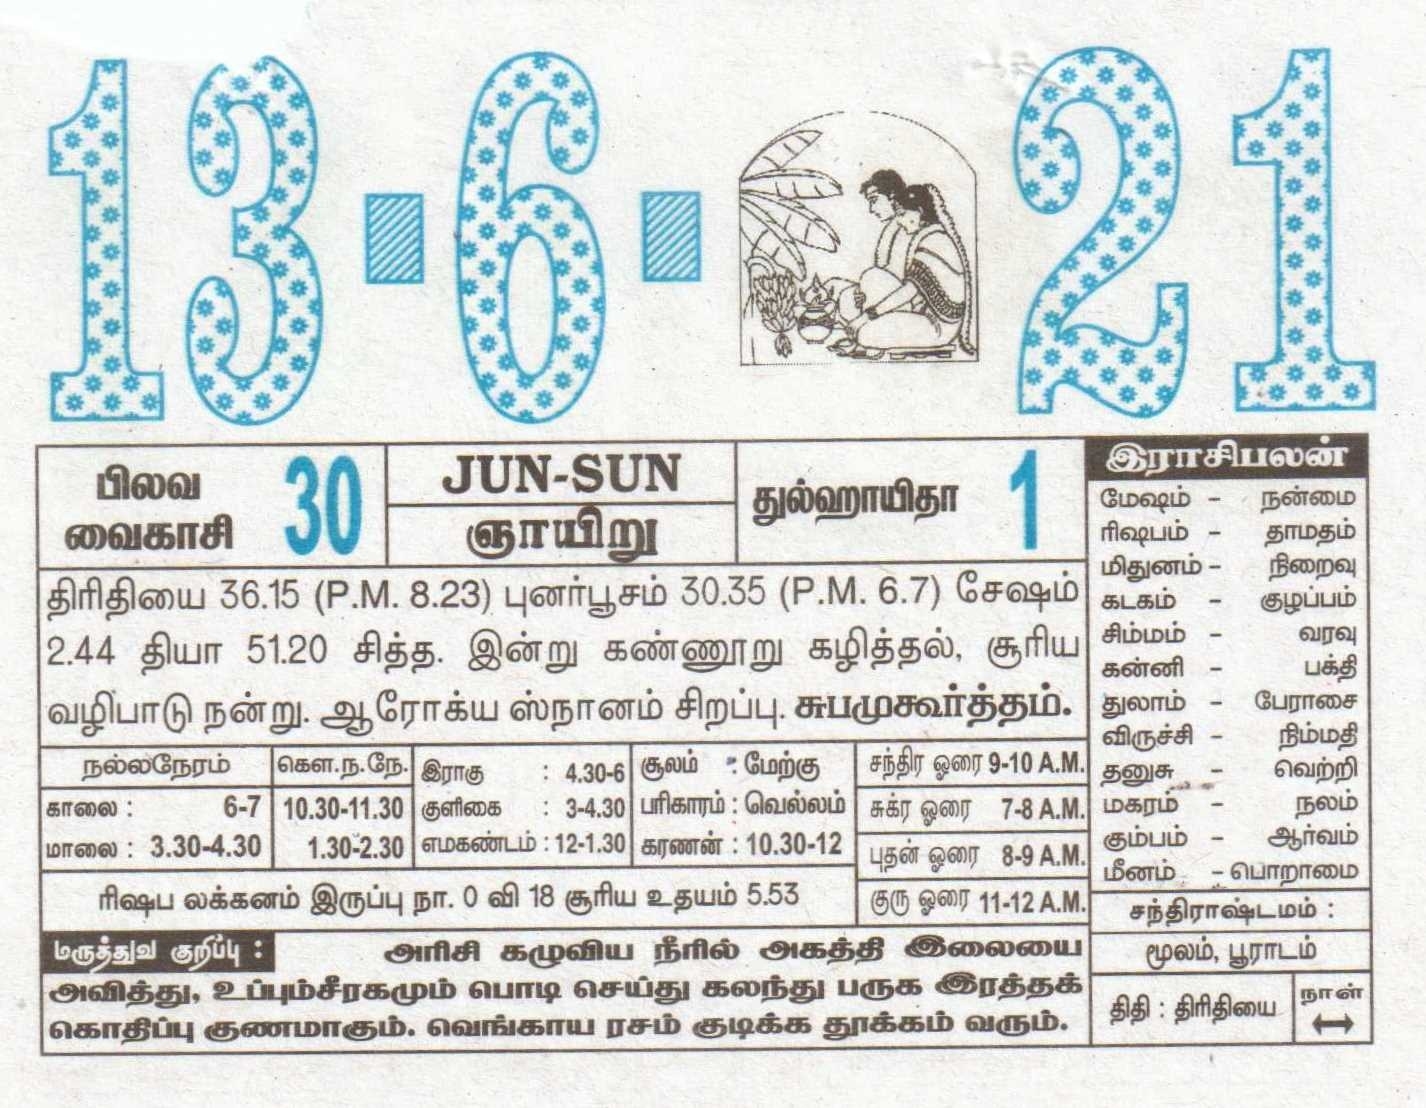 13-06-2021 Daily Calendar | Date 13 , January Daily Tear Off Calendar | Daily Panchangam Rasi Palan Tamil Daily Calendar 2021 September